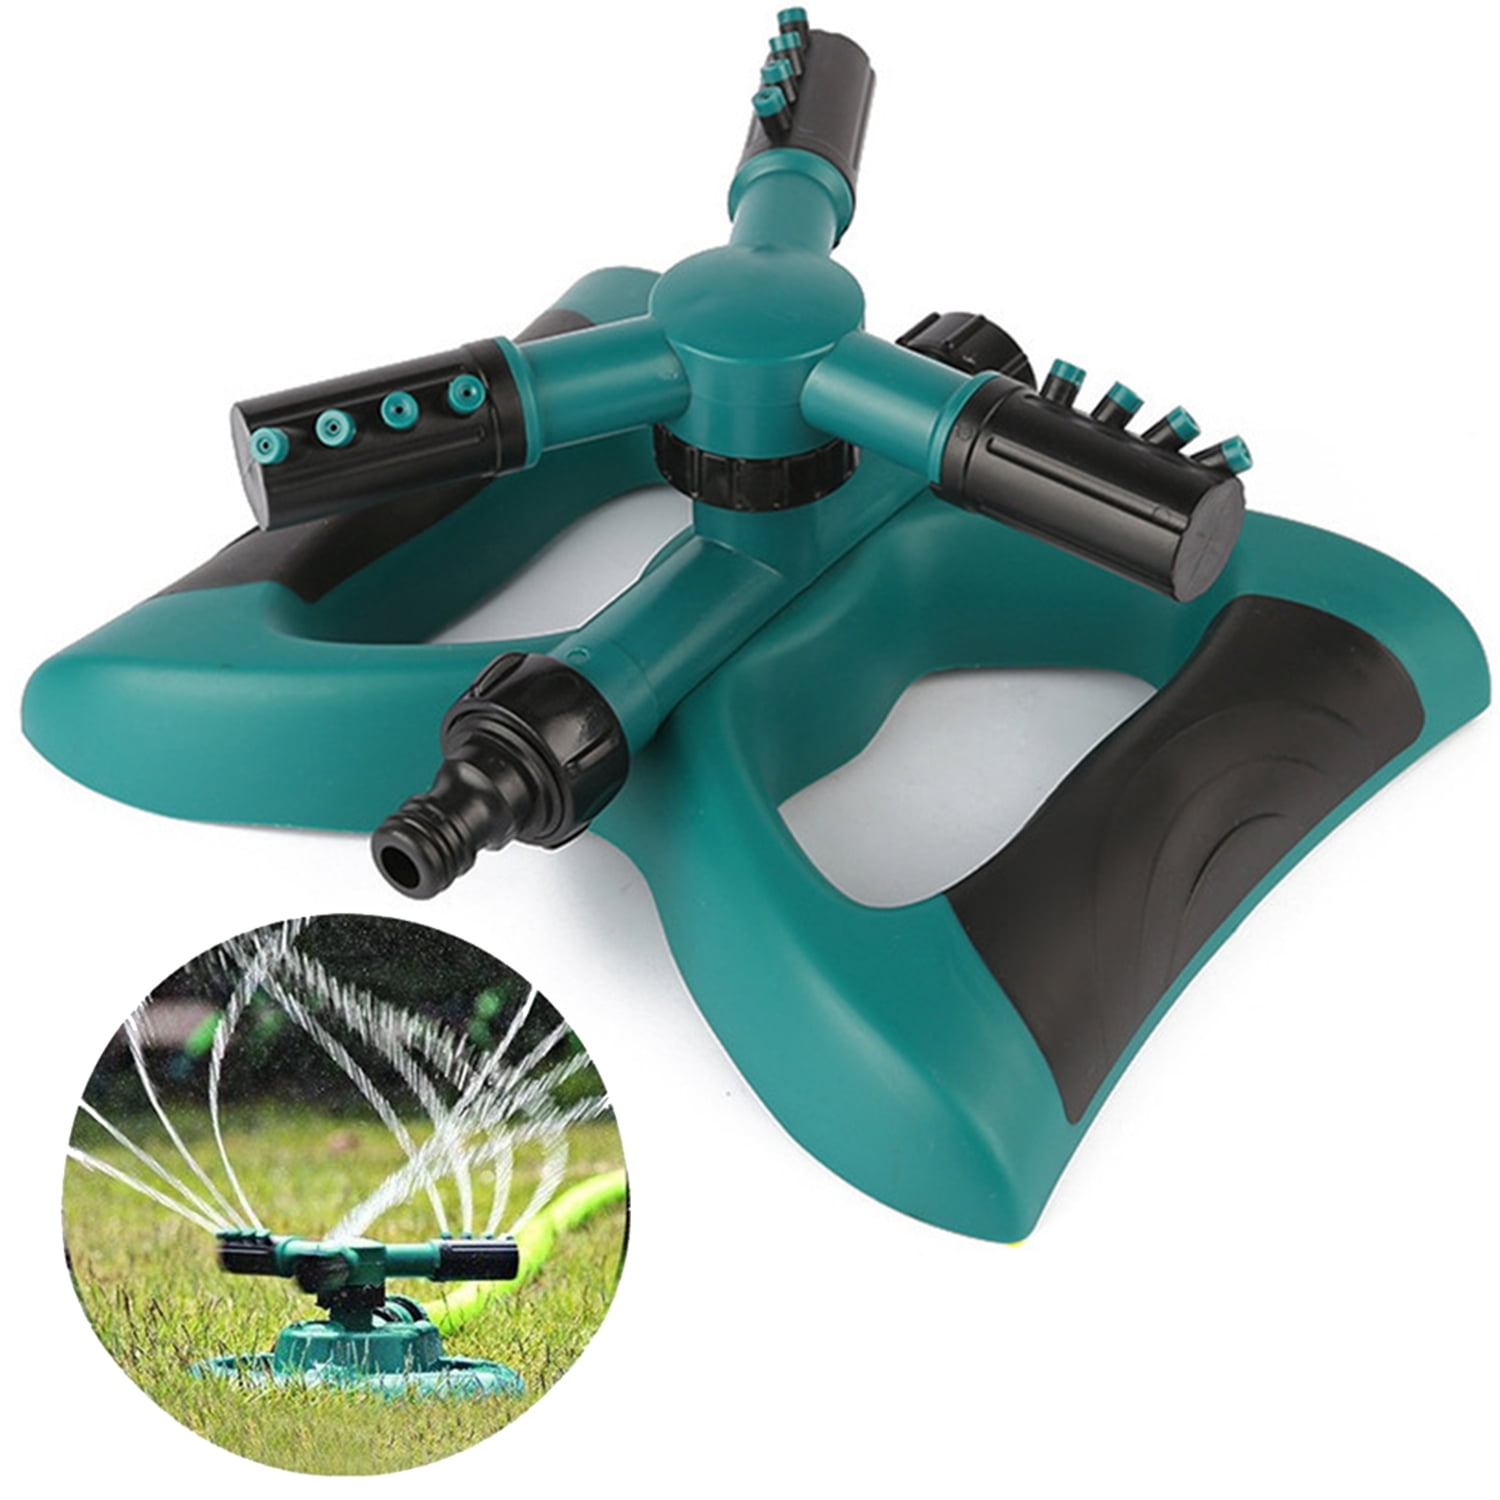 Details about   Lawn Sprinkler Upgrade Garden Sprinkler Automatic 360 Degree Rotating Irrigation 